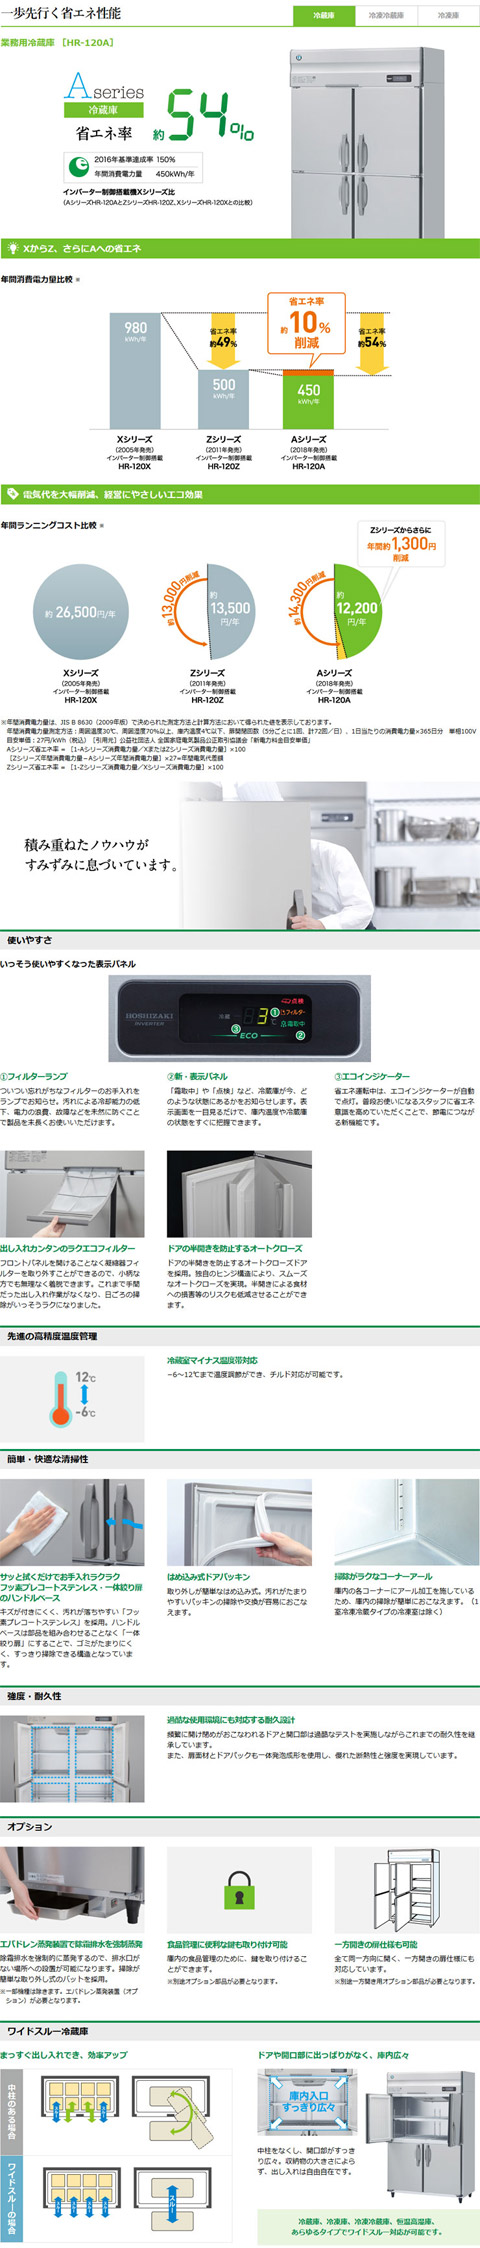 ホシザキ・星崎 縦型インバーター冷蔵庫 型式：HR-150AT-1-6D送料無料 （メーカーより直送）メーカー保証付  :R0107006:空調店舗厨房センター 通販 